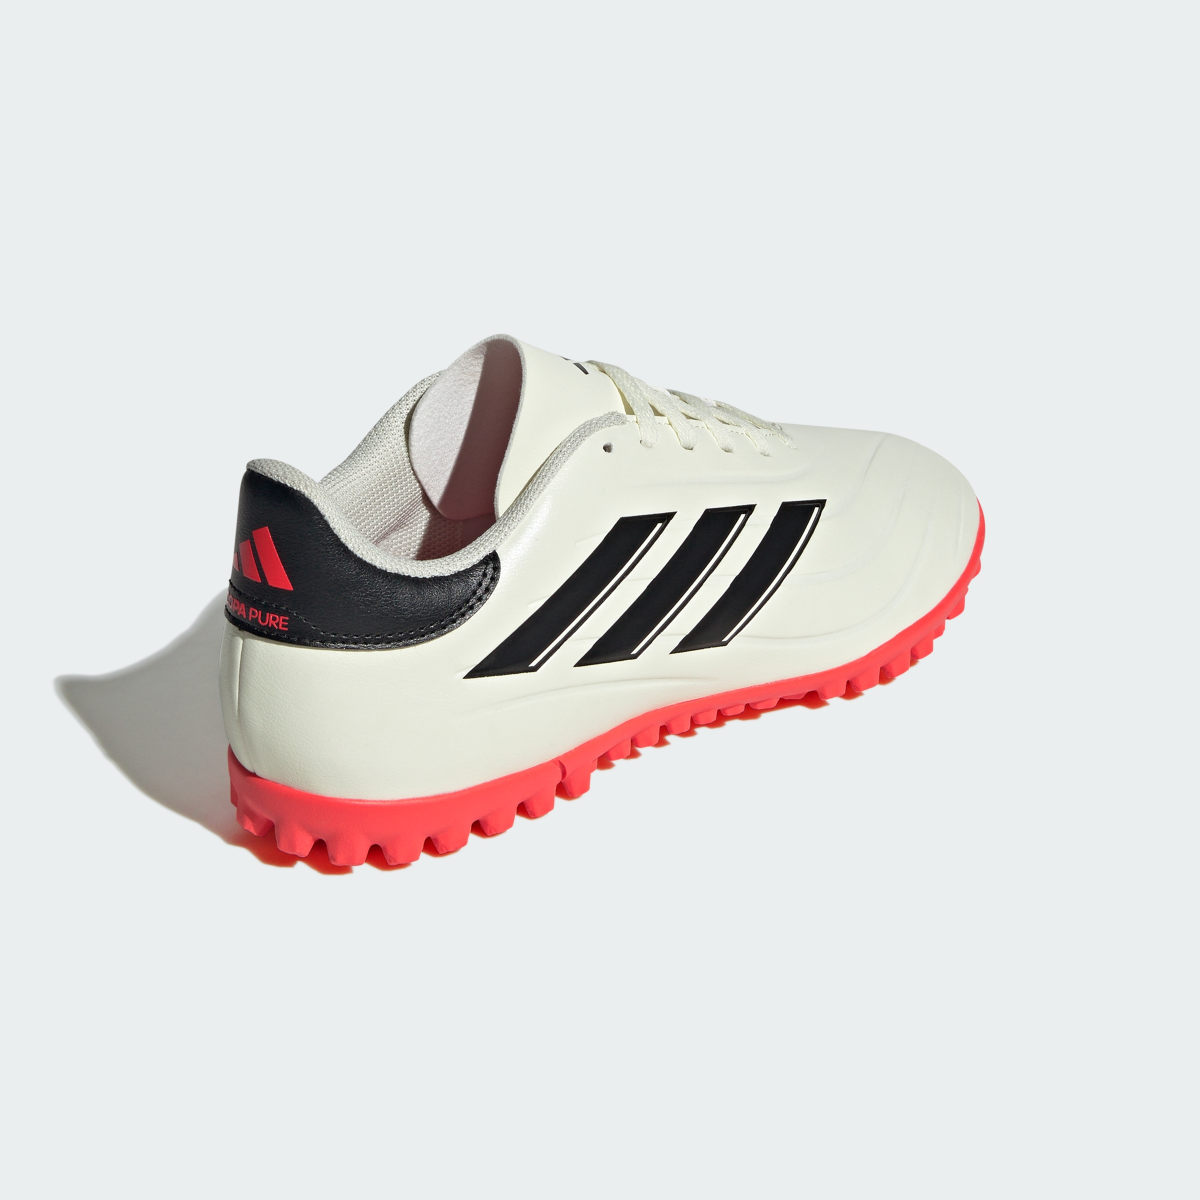 Adidas Copa Pure II Club Turf Boots. 6